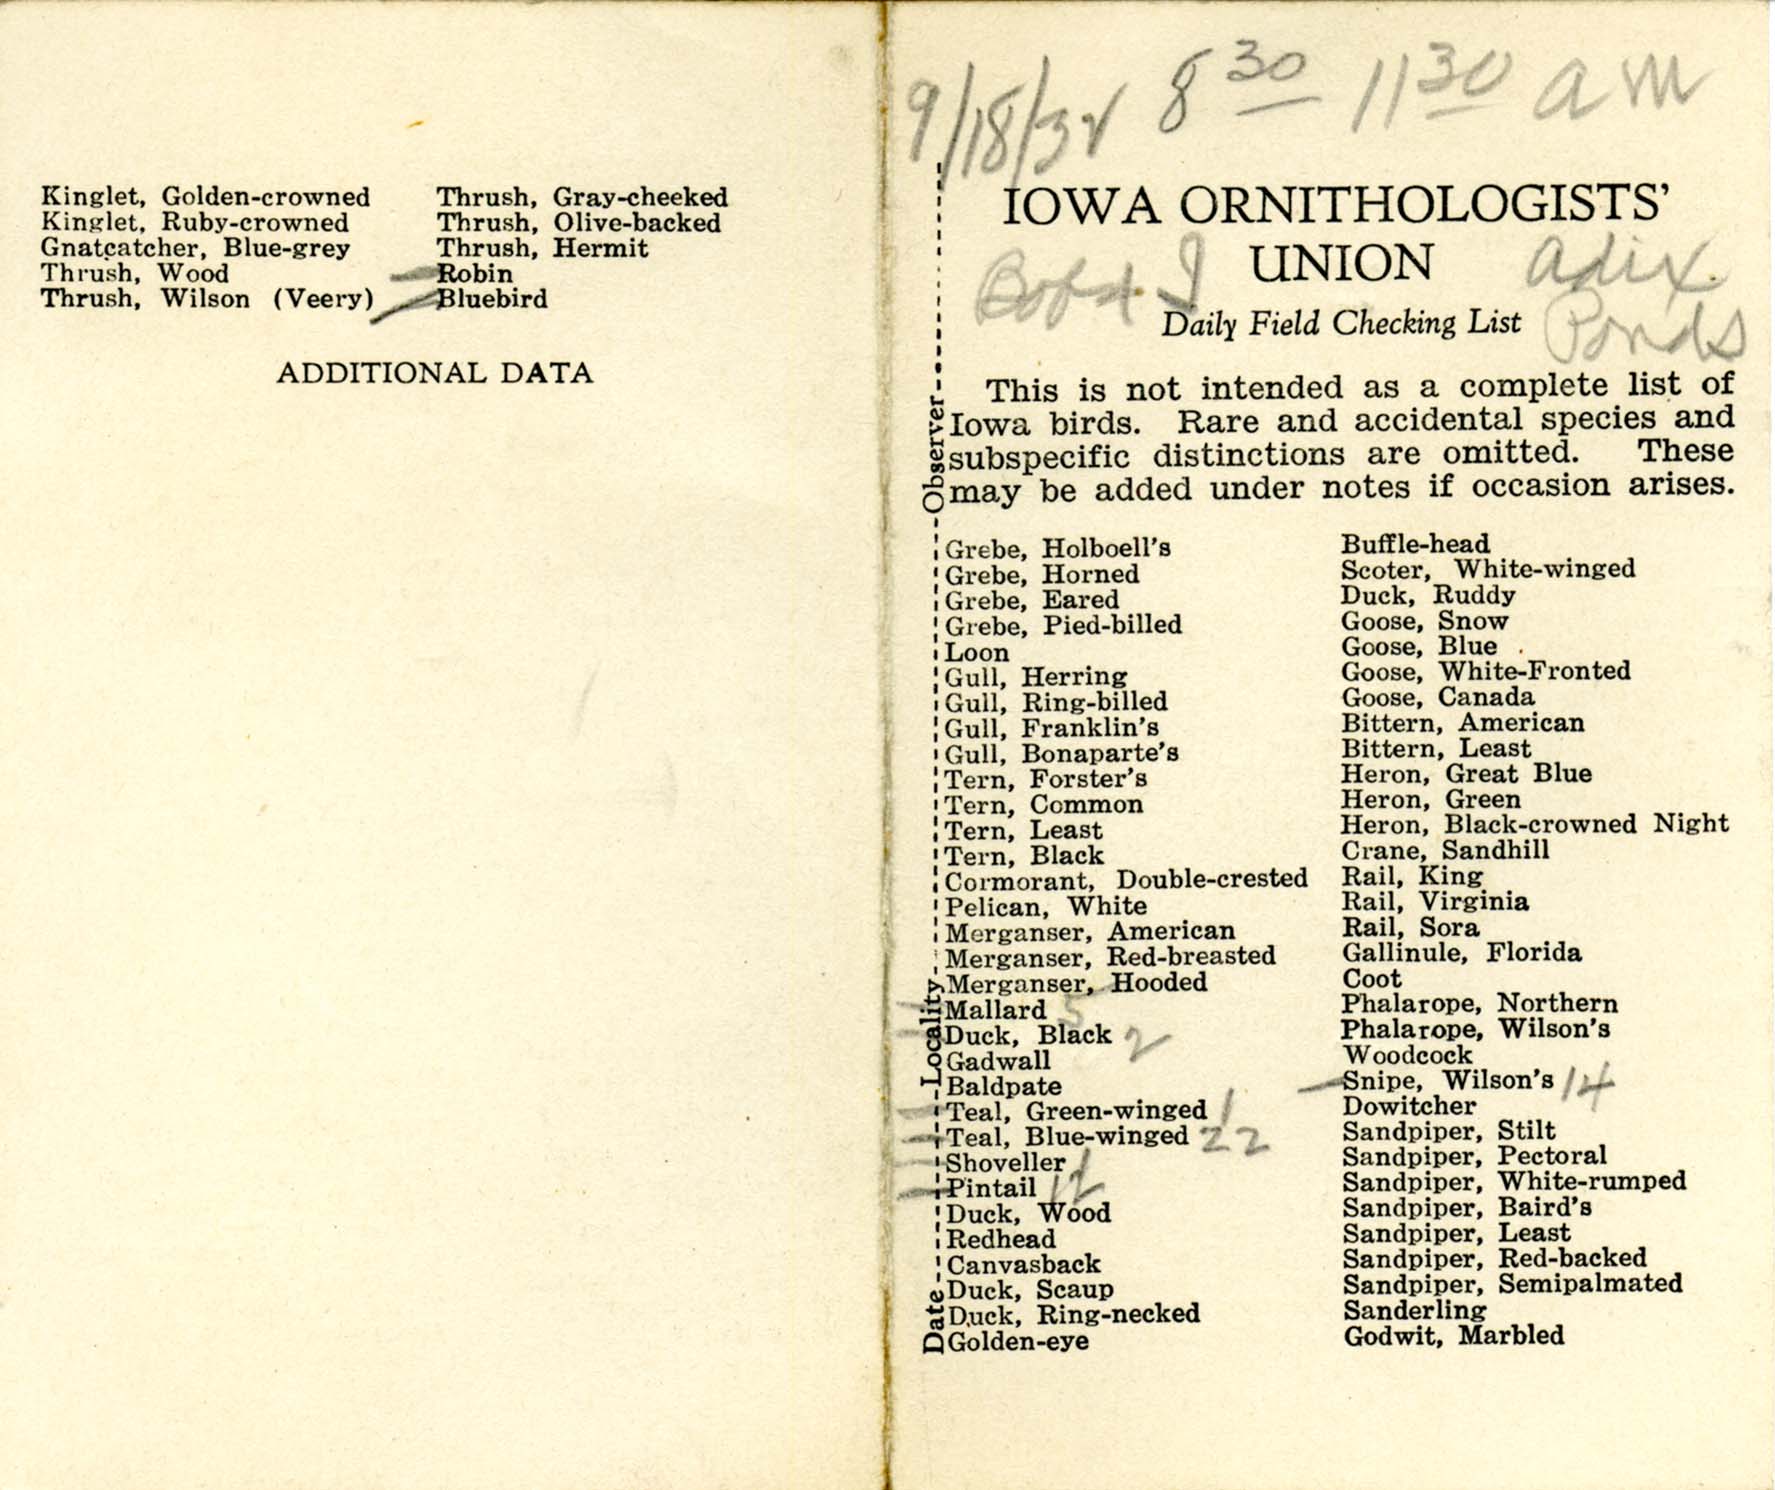 Daily field checking list, Walter Rosene, September 18, 1932